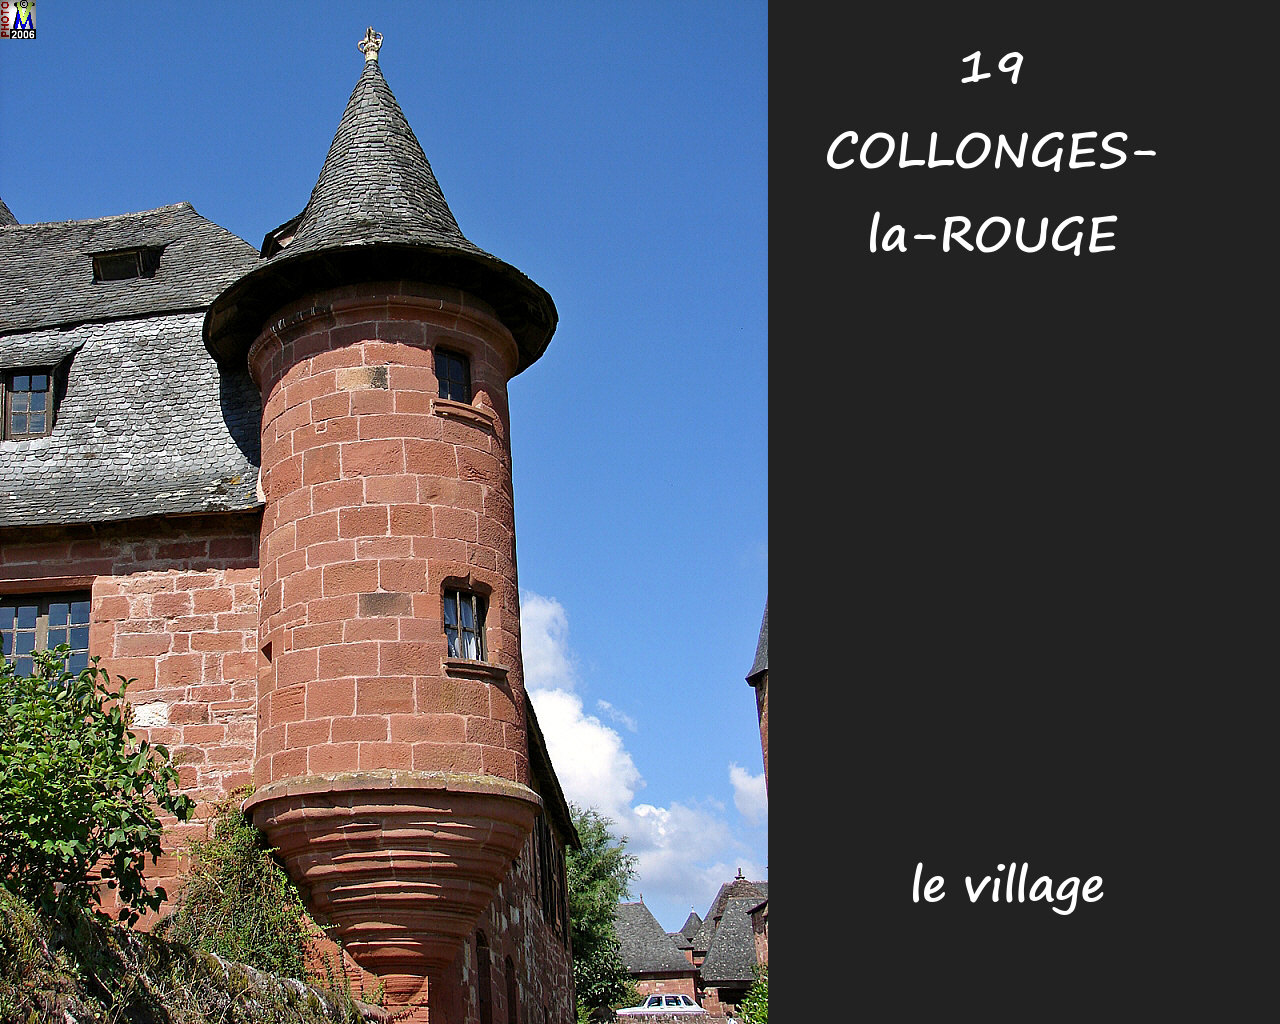 19COLLONGES-ROUGE_village_202.jpg